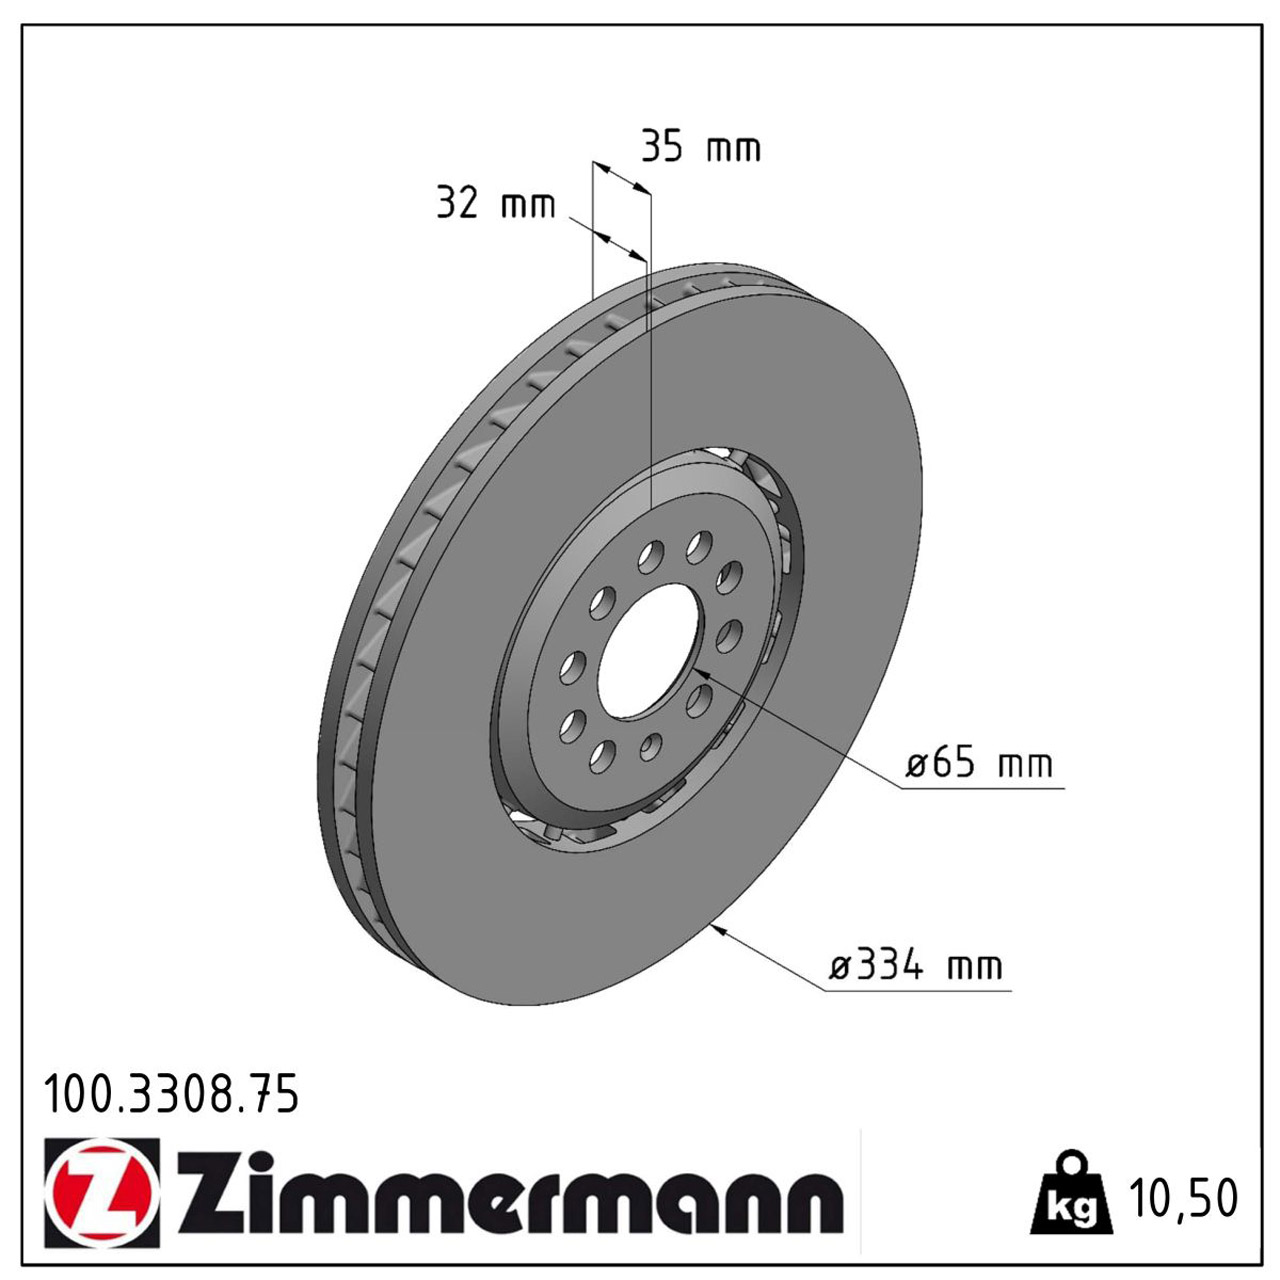 Zimmermann FORMULA Z Bremsscheiben Satz AUDI TT (8N3 8N9) 3.2 VR6 VW Golf 4 R32 vorne